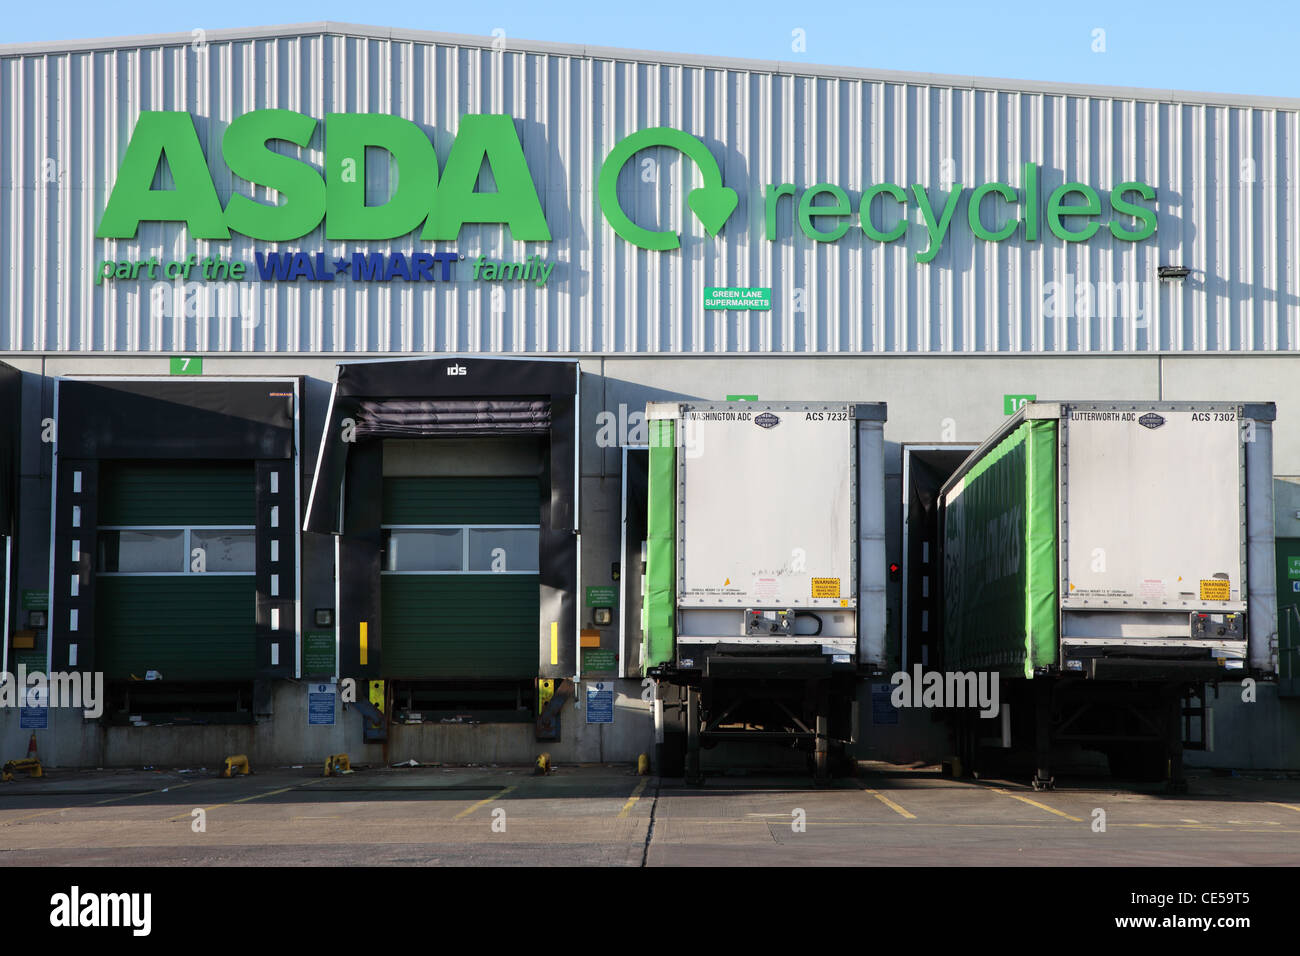 Asda Wallmart Ambiente centro distribuzione Washington North East England Regno Unito Foto Stock